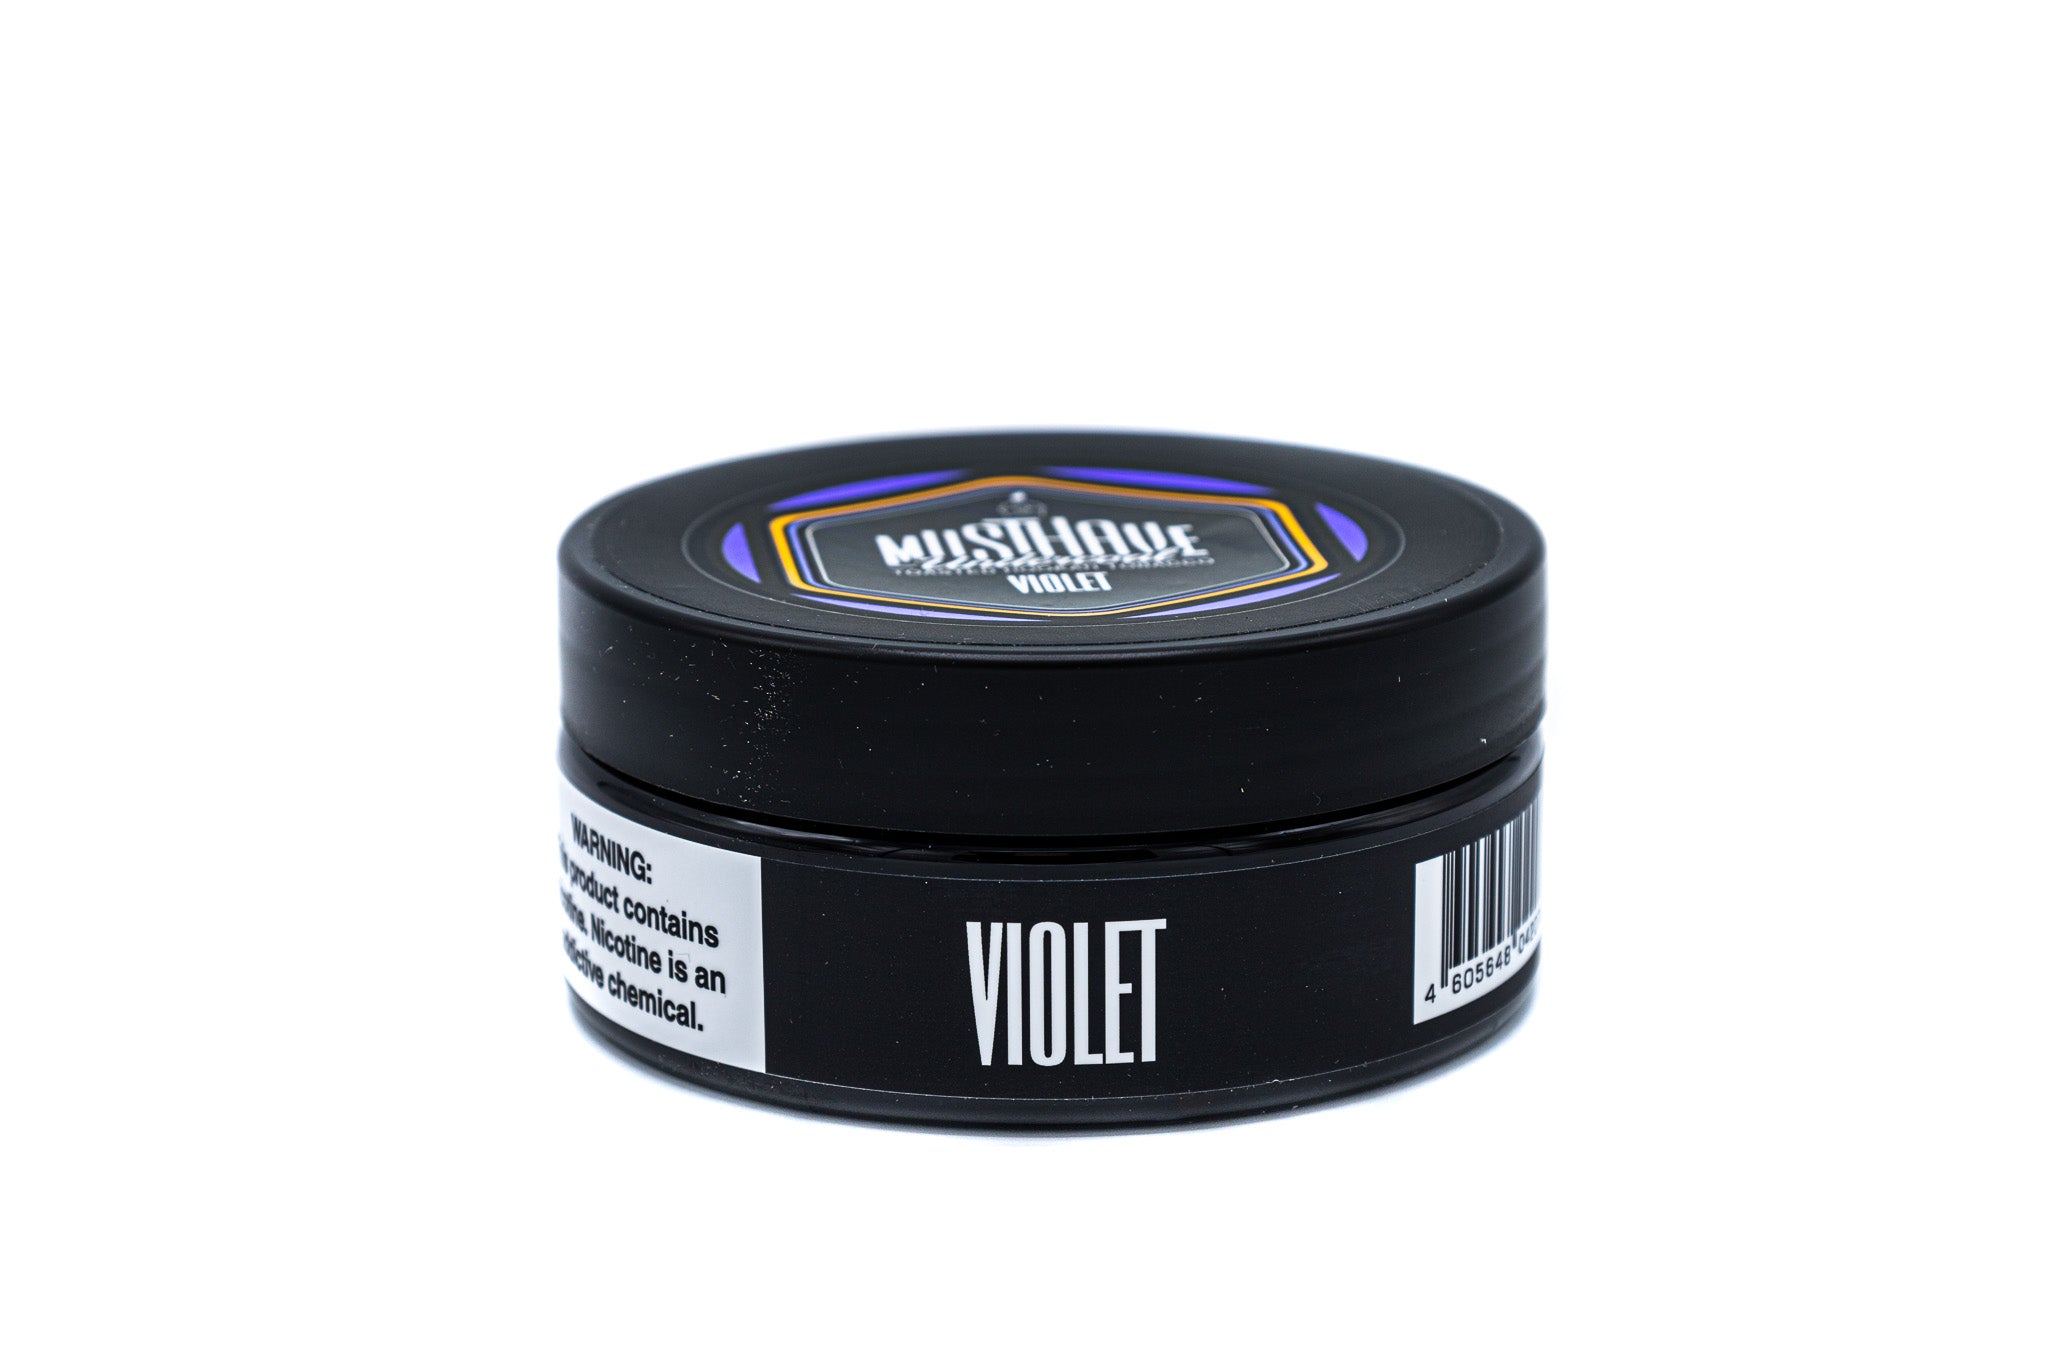 Musthave Violet 125G - Smoxygen